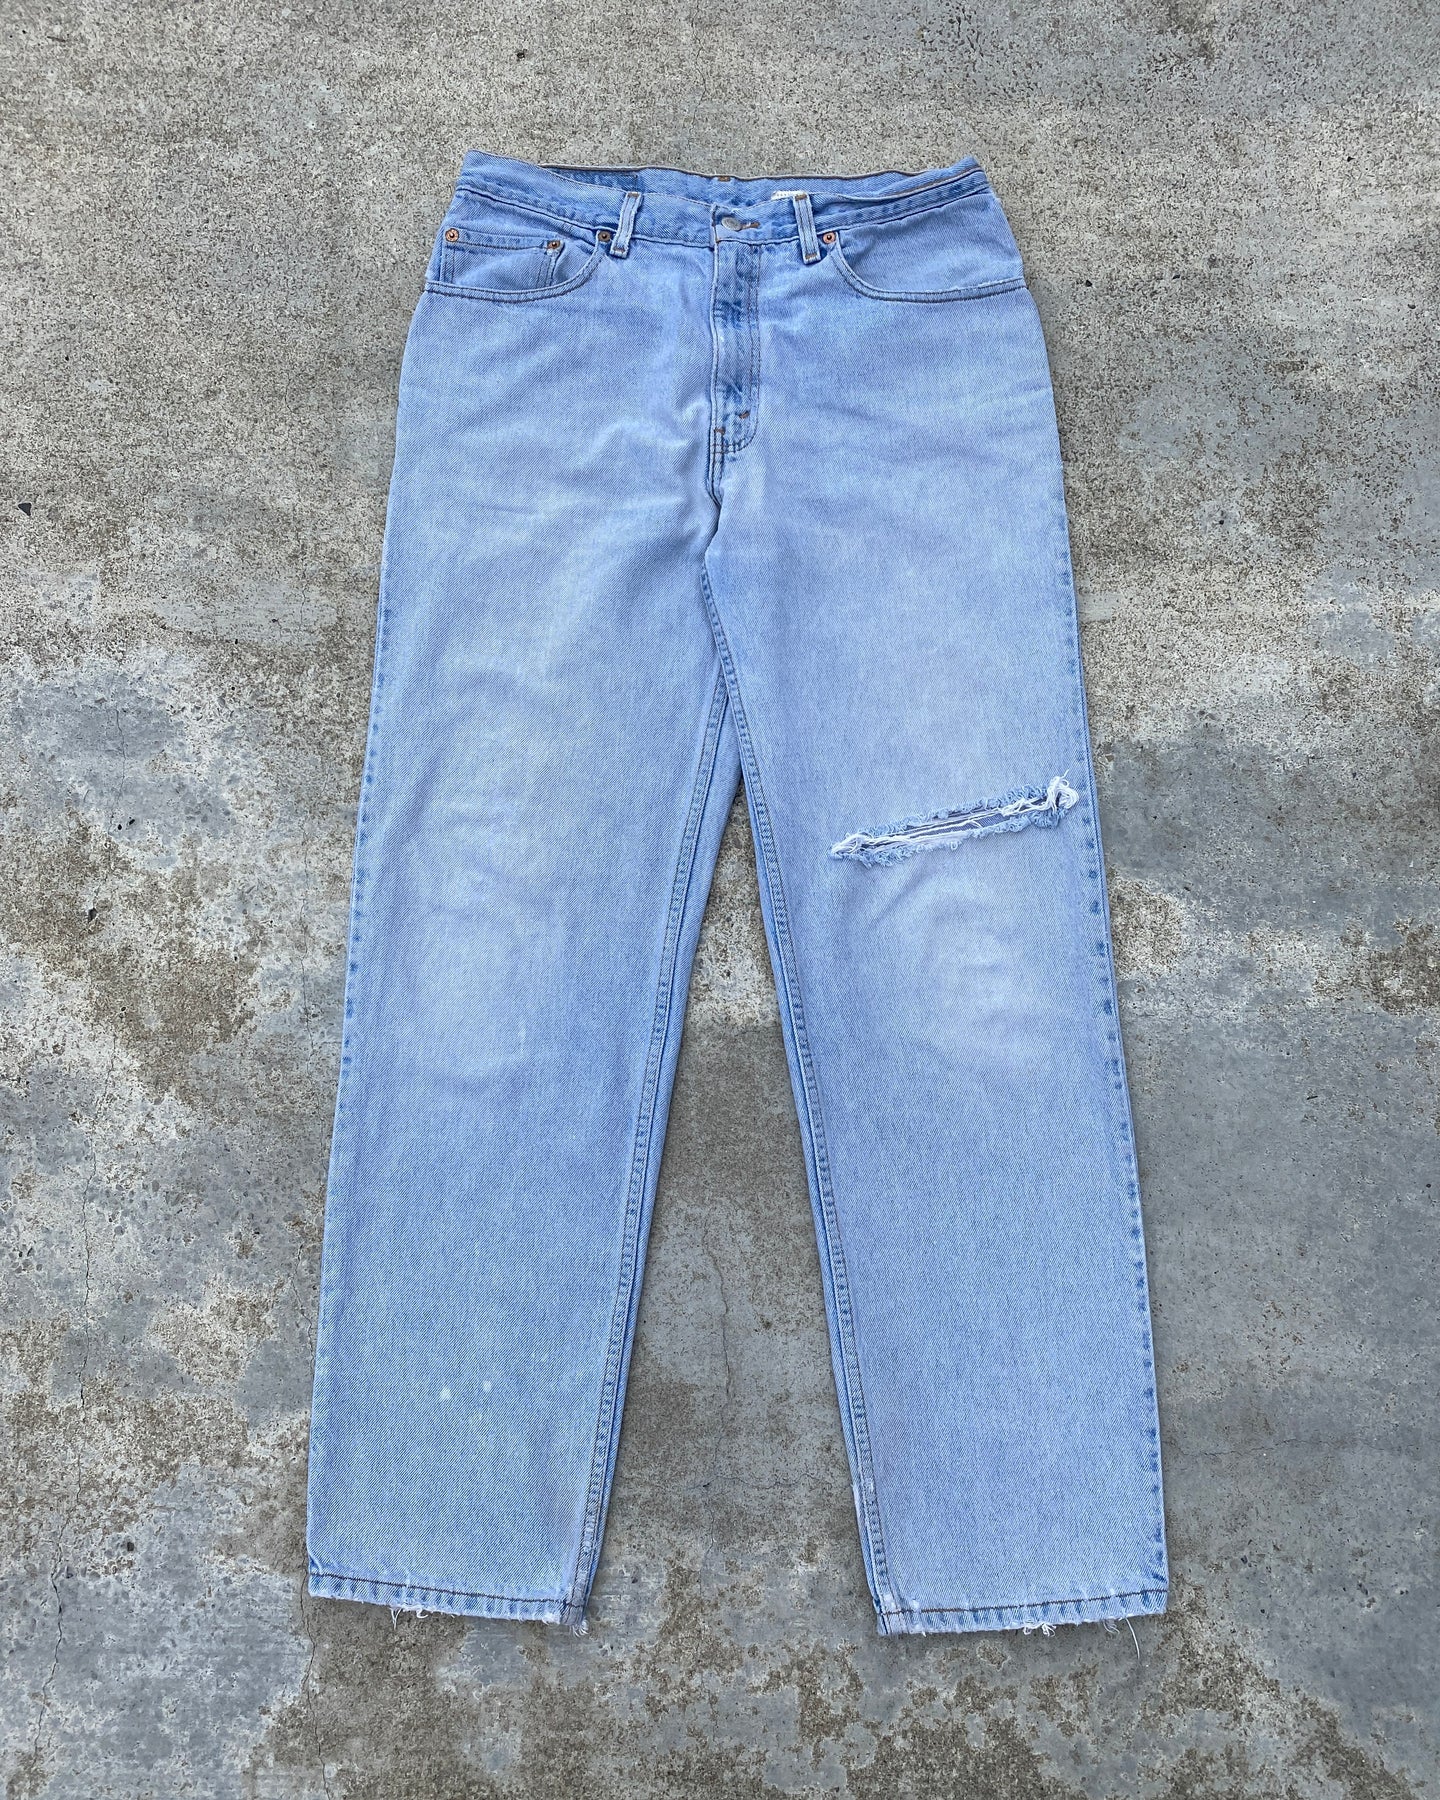 1990s Levi's 550 Blowout Light Wash Jeans - Size 34 x 31